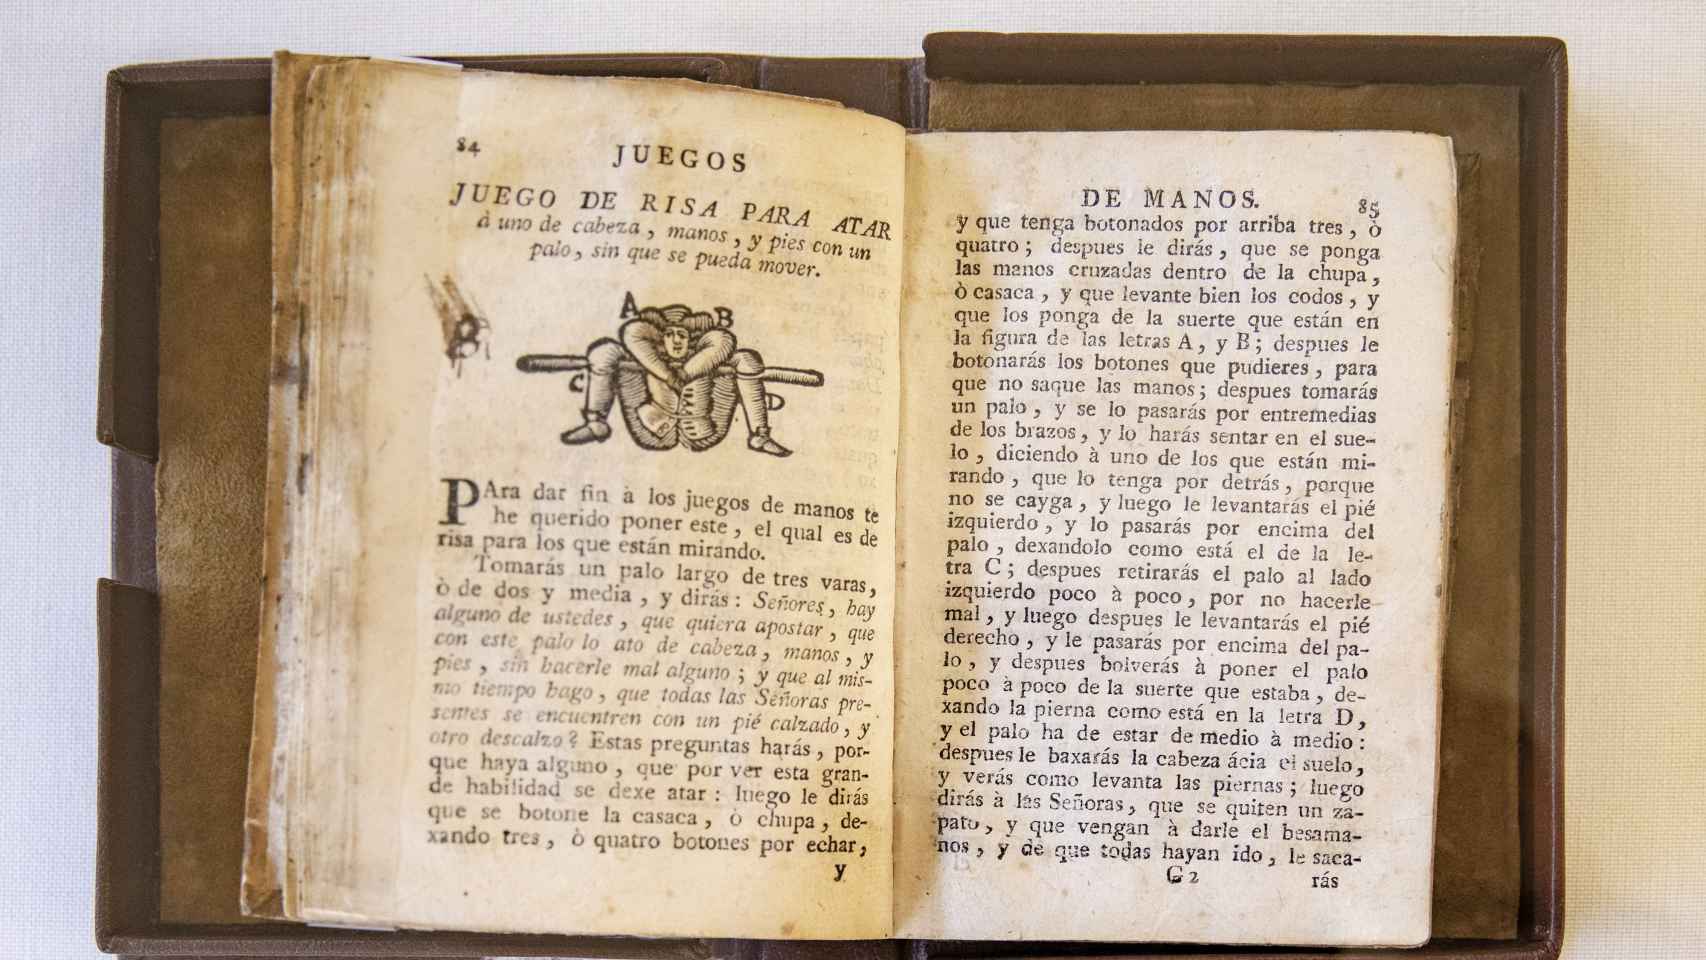 El libro de Pablo Minguet 'Engaños a ojos vistas y diversión de trabajos mundanos fundada en lícitos juegos de manos', publicado en 1755